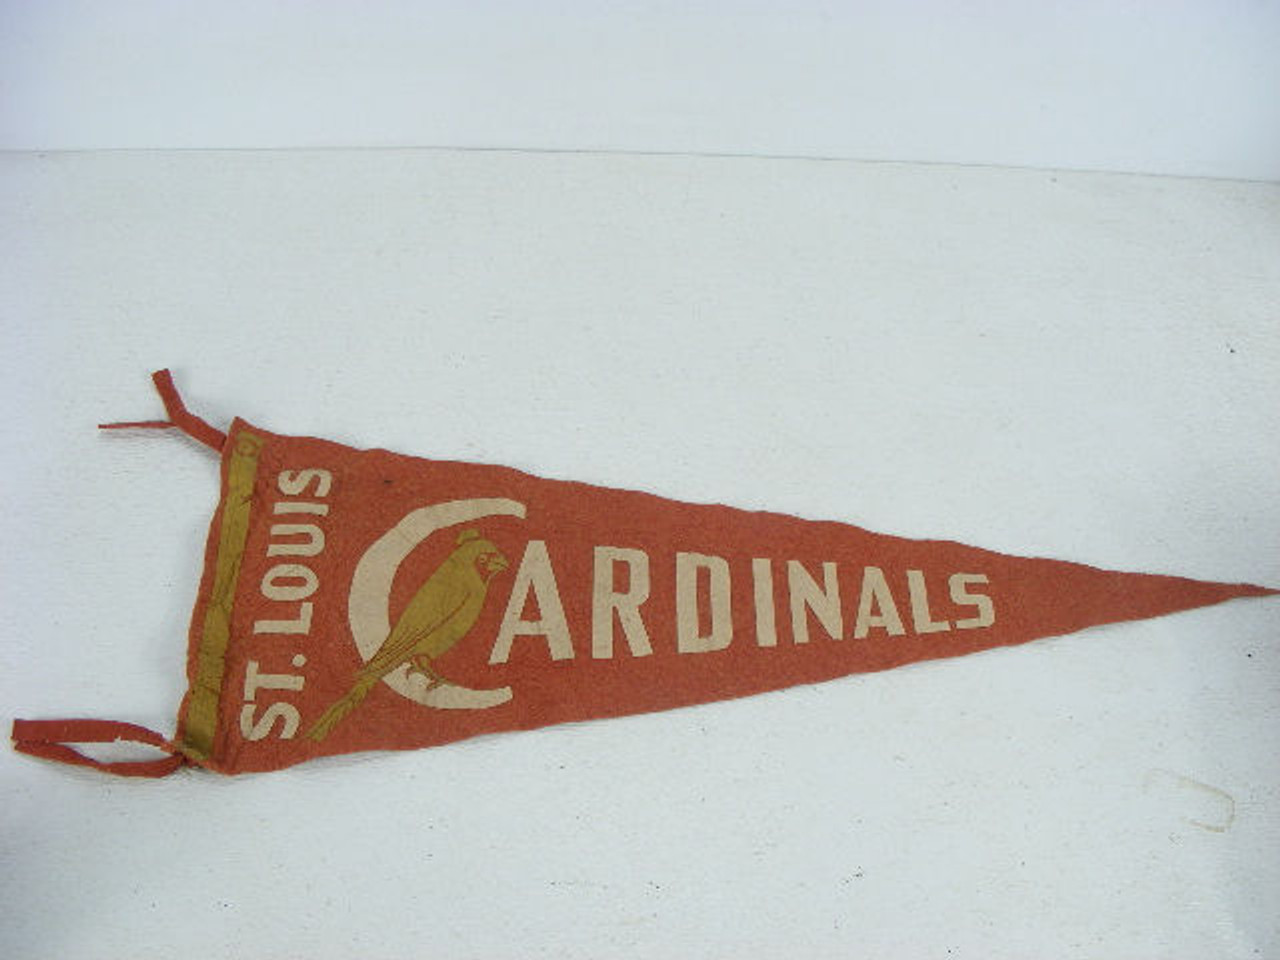 Vintage St. Louis Cardinals Pennant